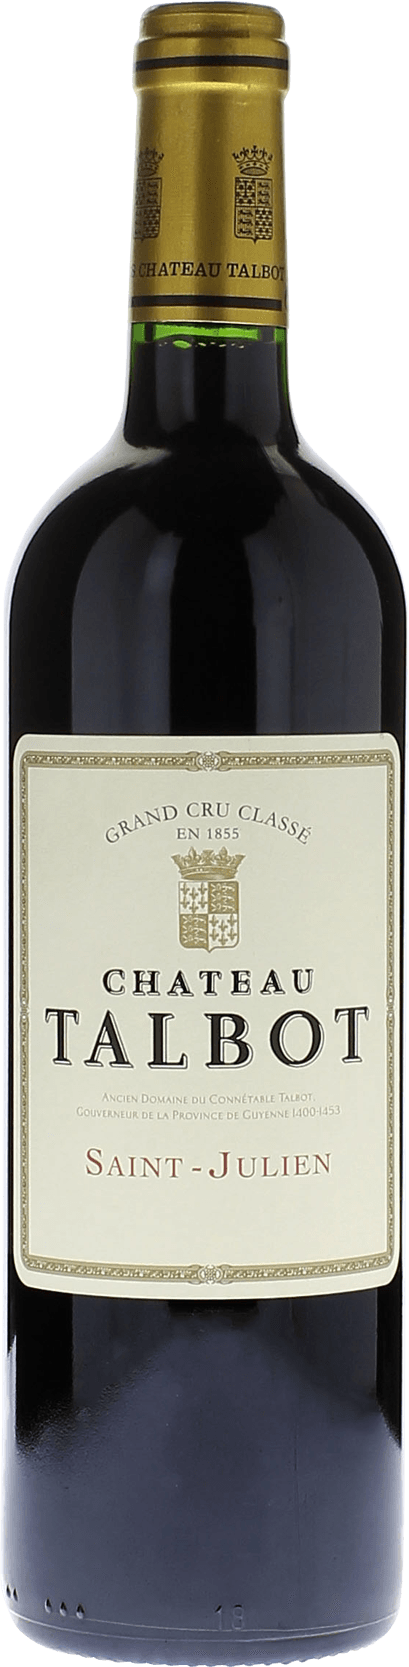 Talbot 1988 4me Grand cru class Saint-Julien, Bordeaux rouge